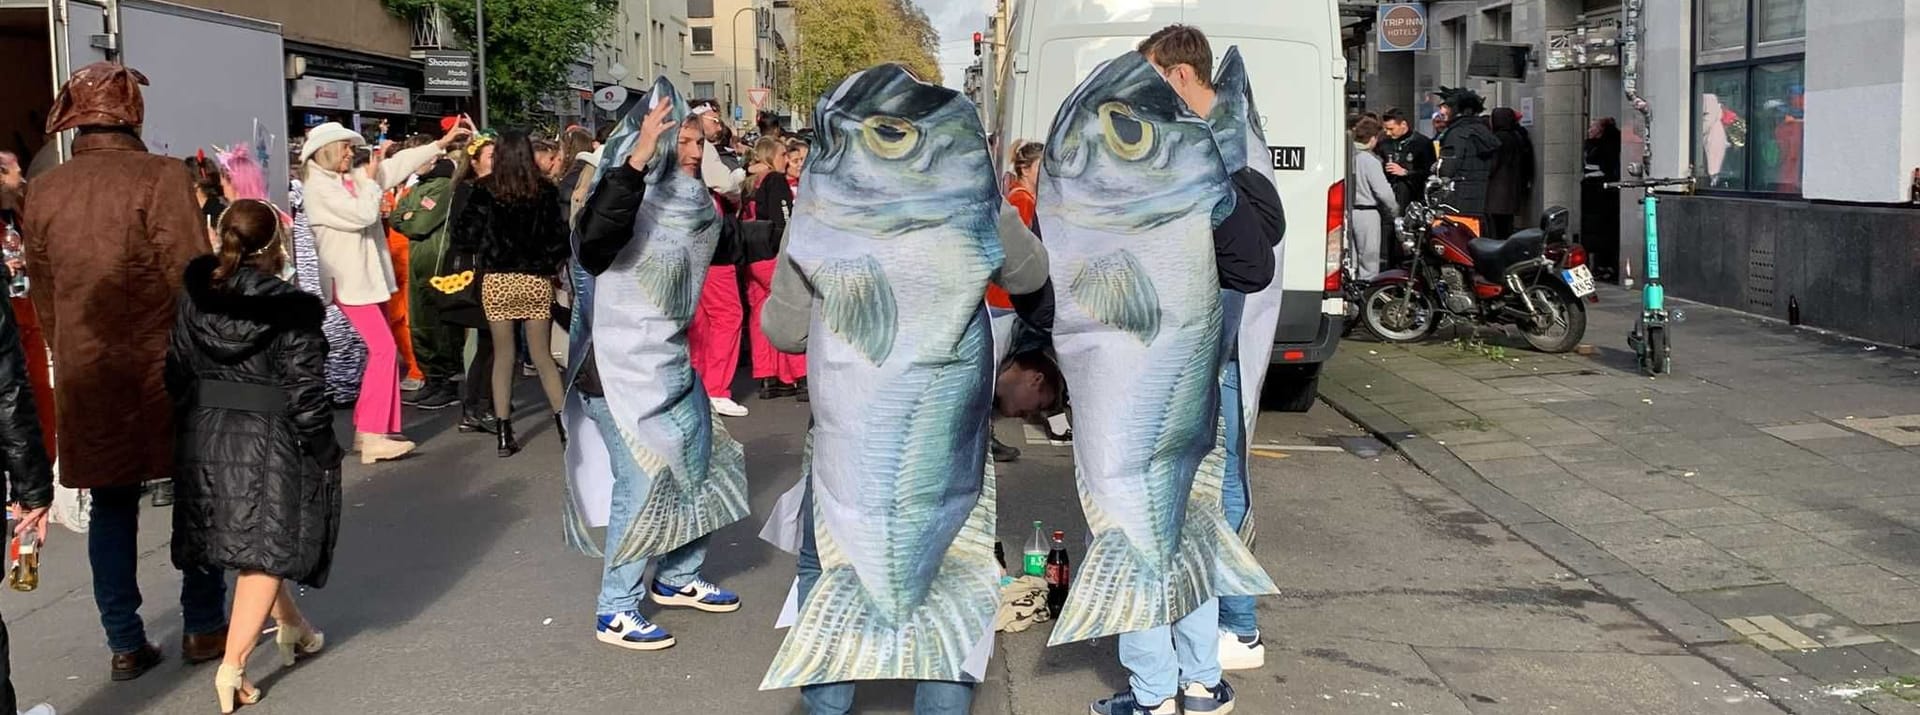 Fisch-Kostüme sind in diesem Jahr offenbar beliebt.